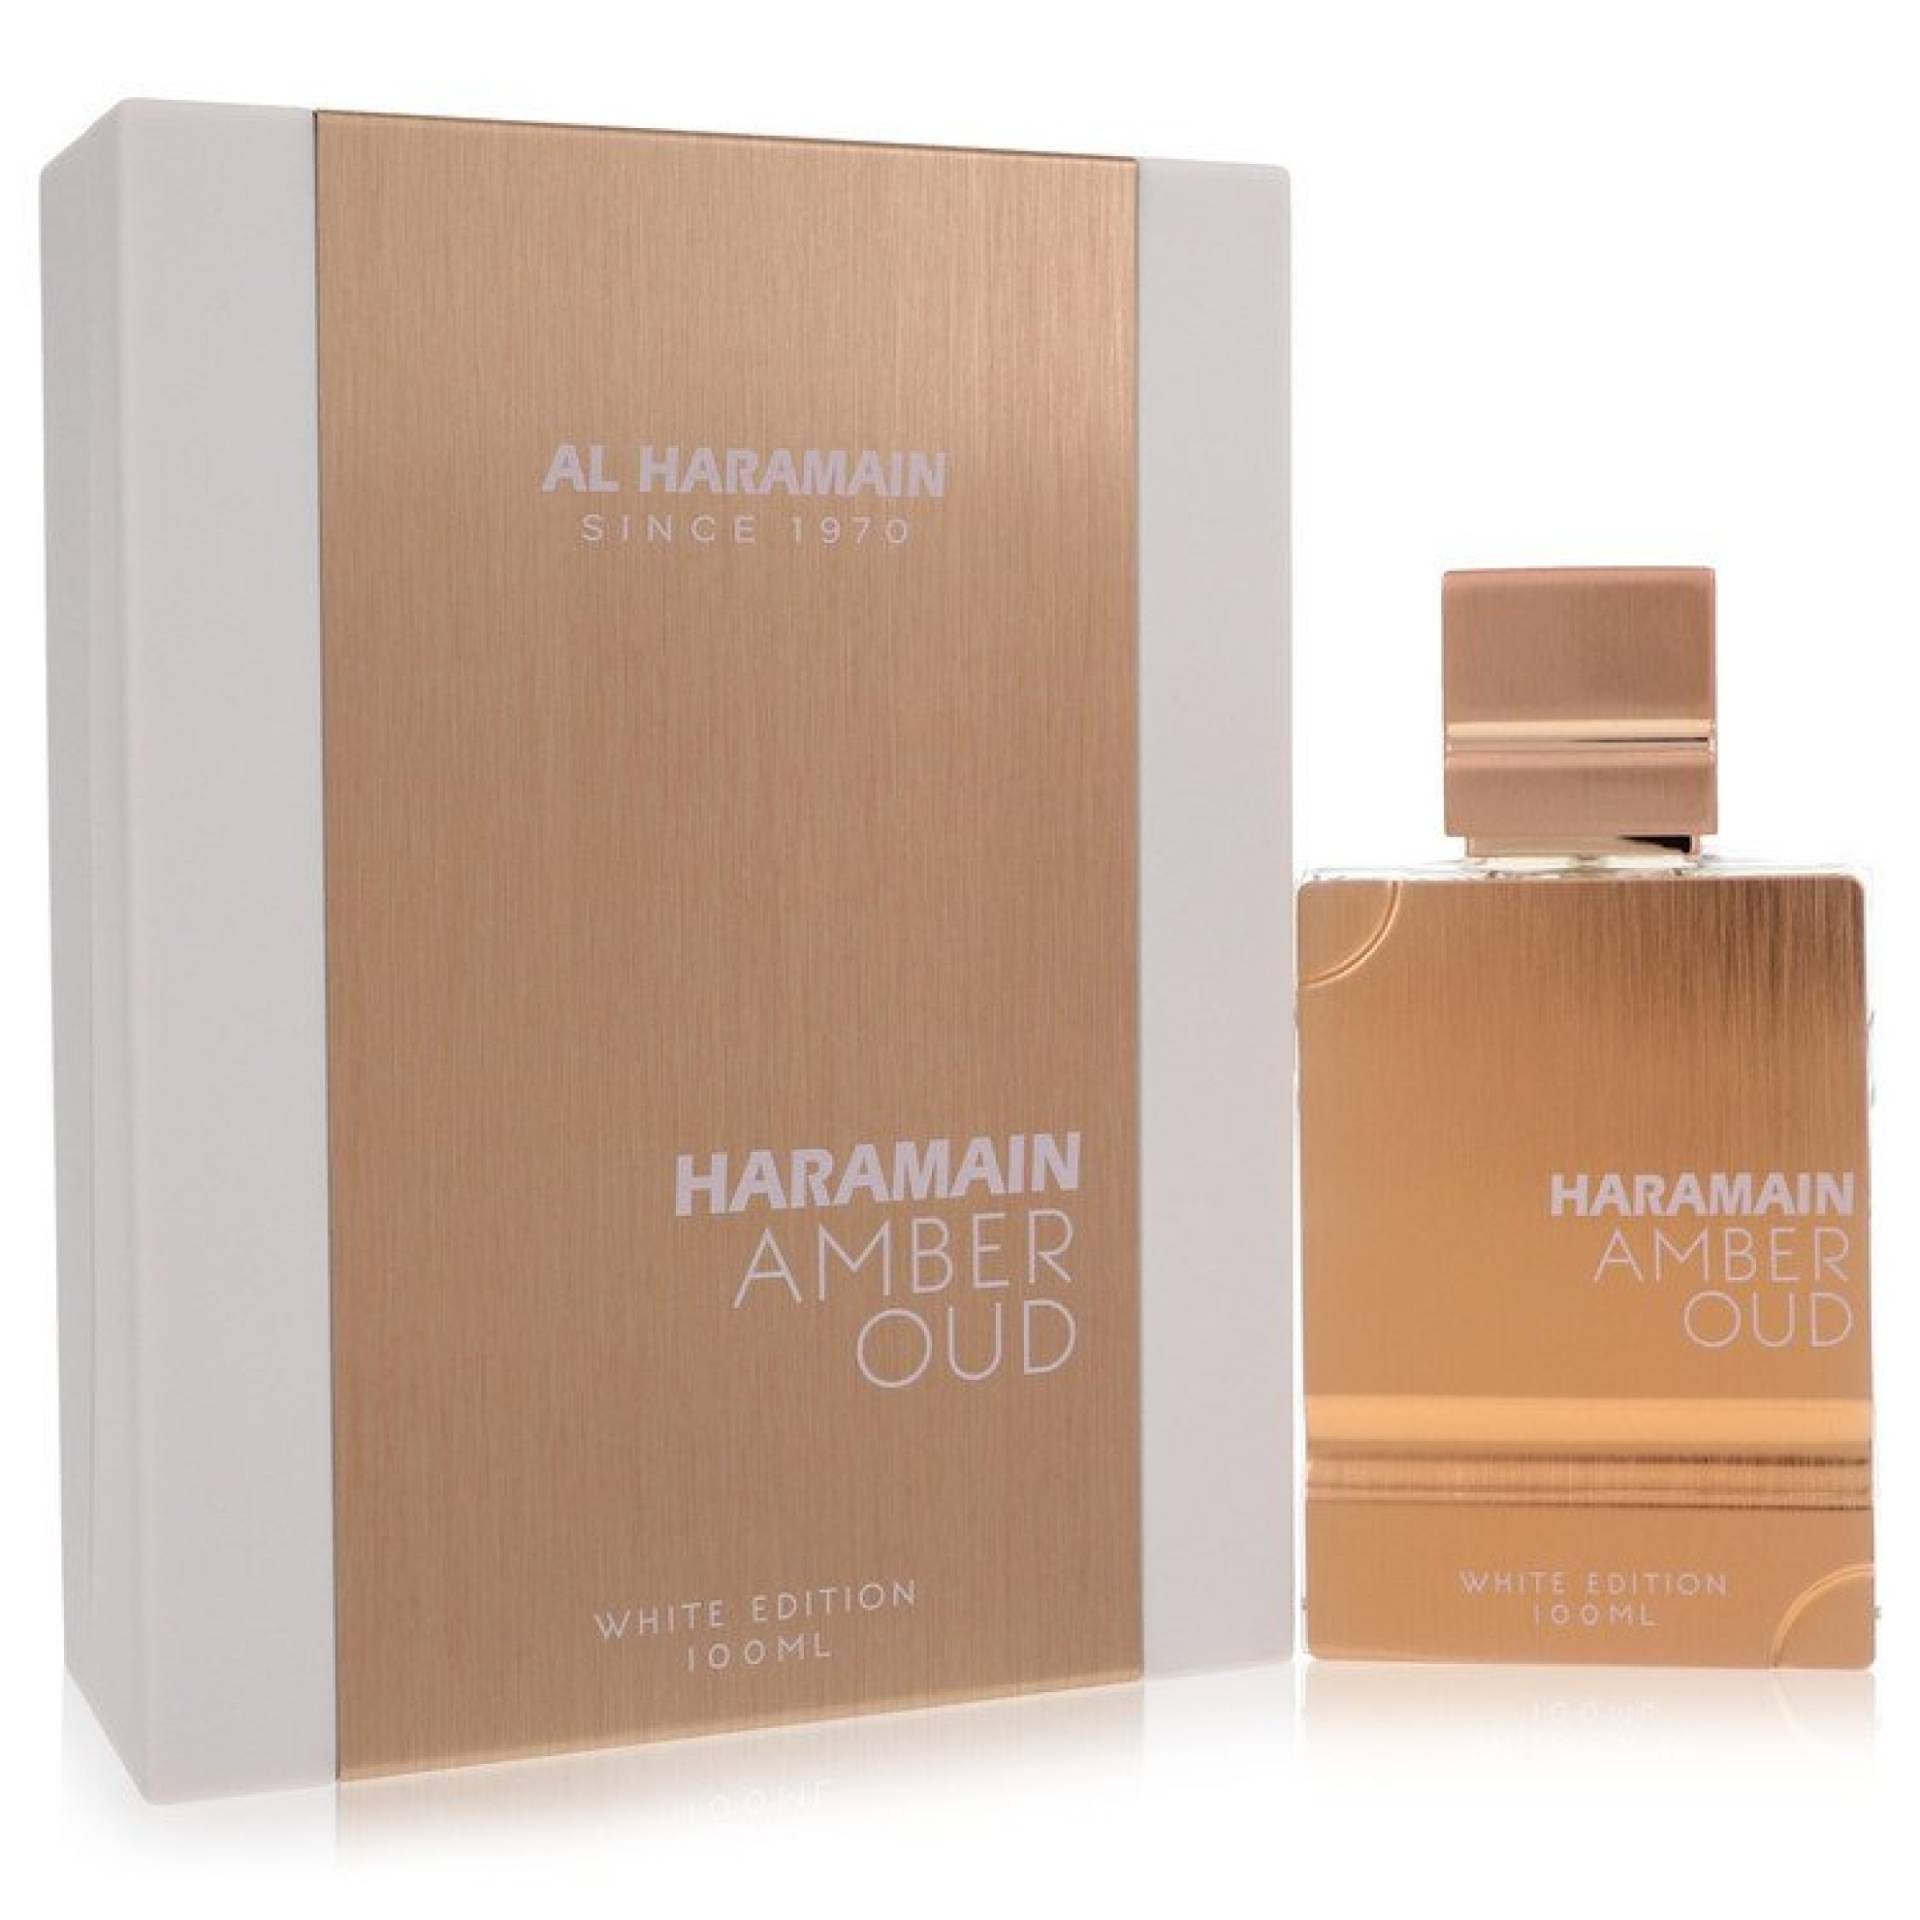 Al Haramain Amber Oud White Edition Eau De Parfum Spray (Unisex) 100 ml von Al Haramain